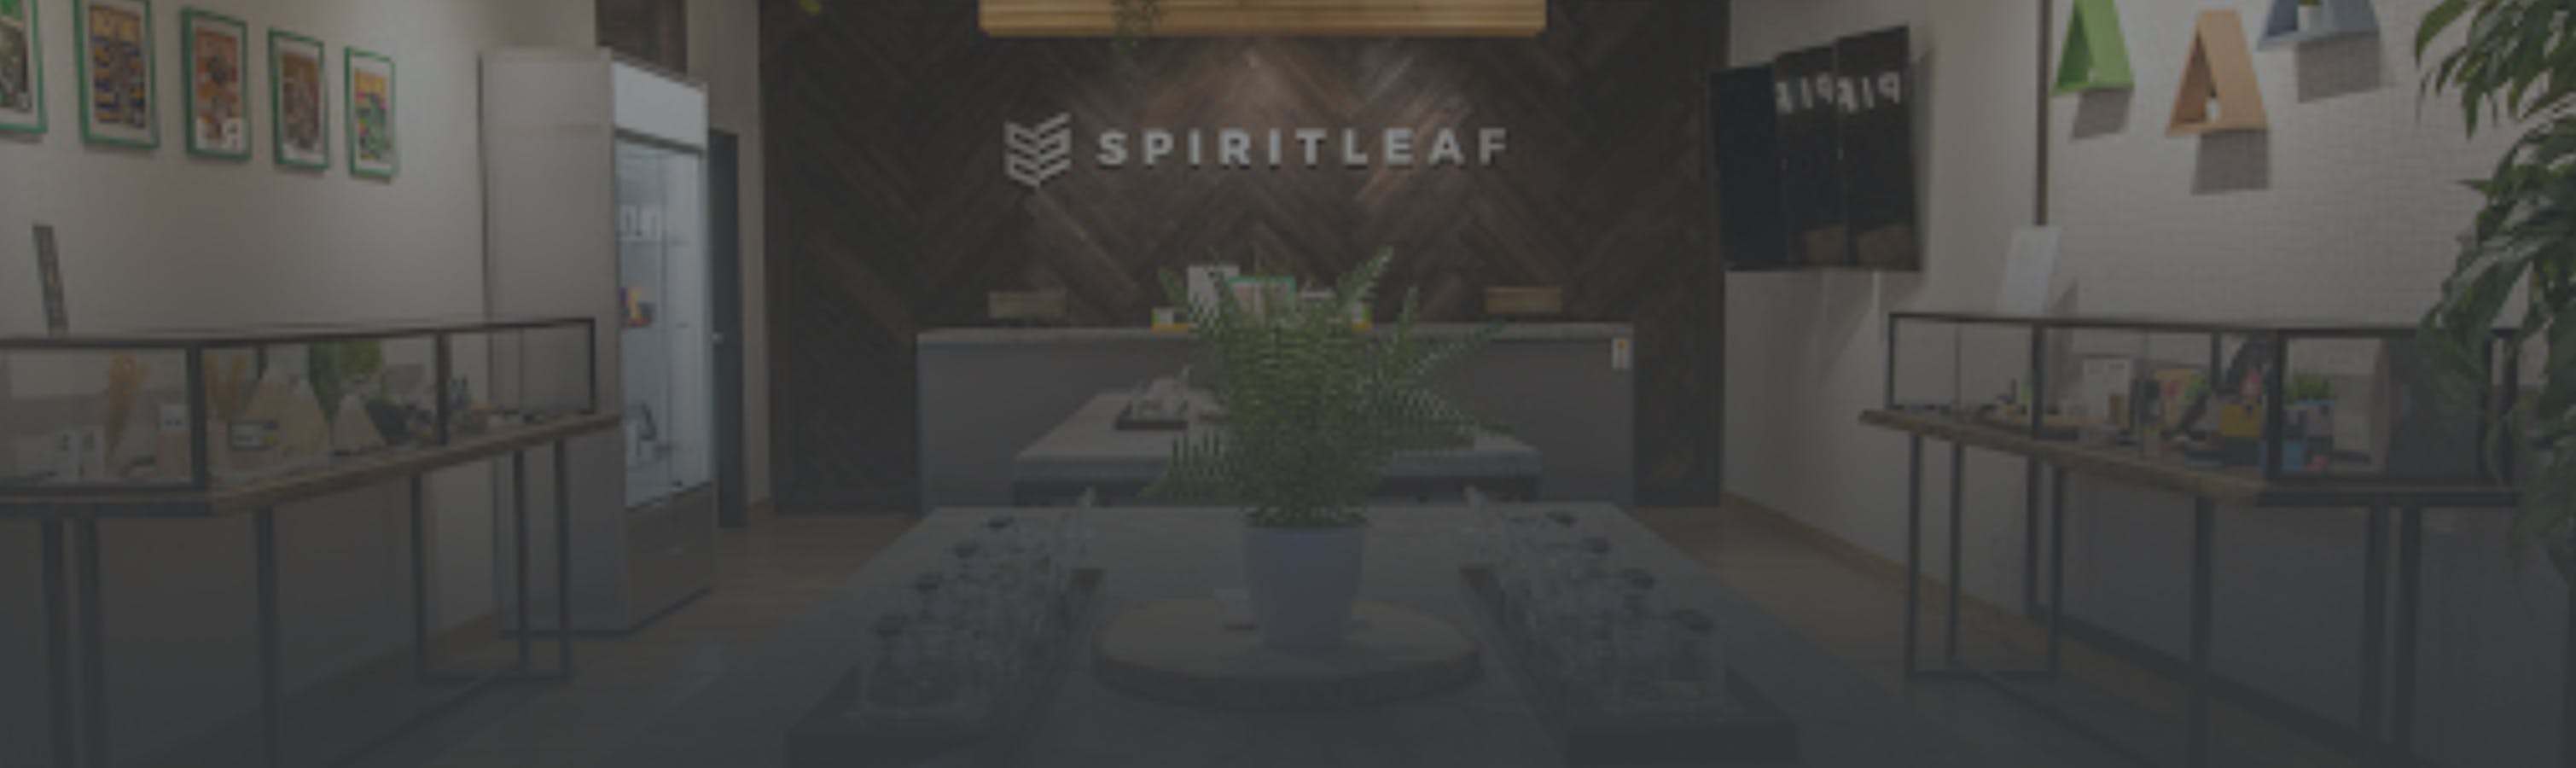 Cannabis Store Spiritleaf (Vernon)  - 0